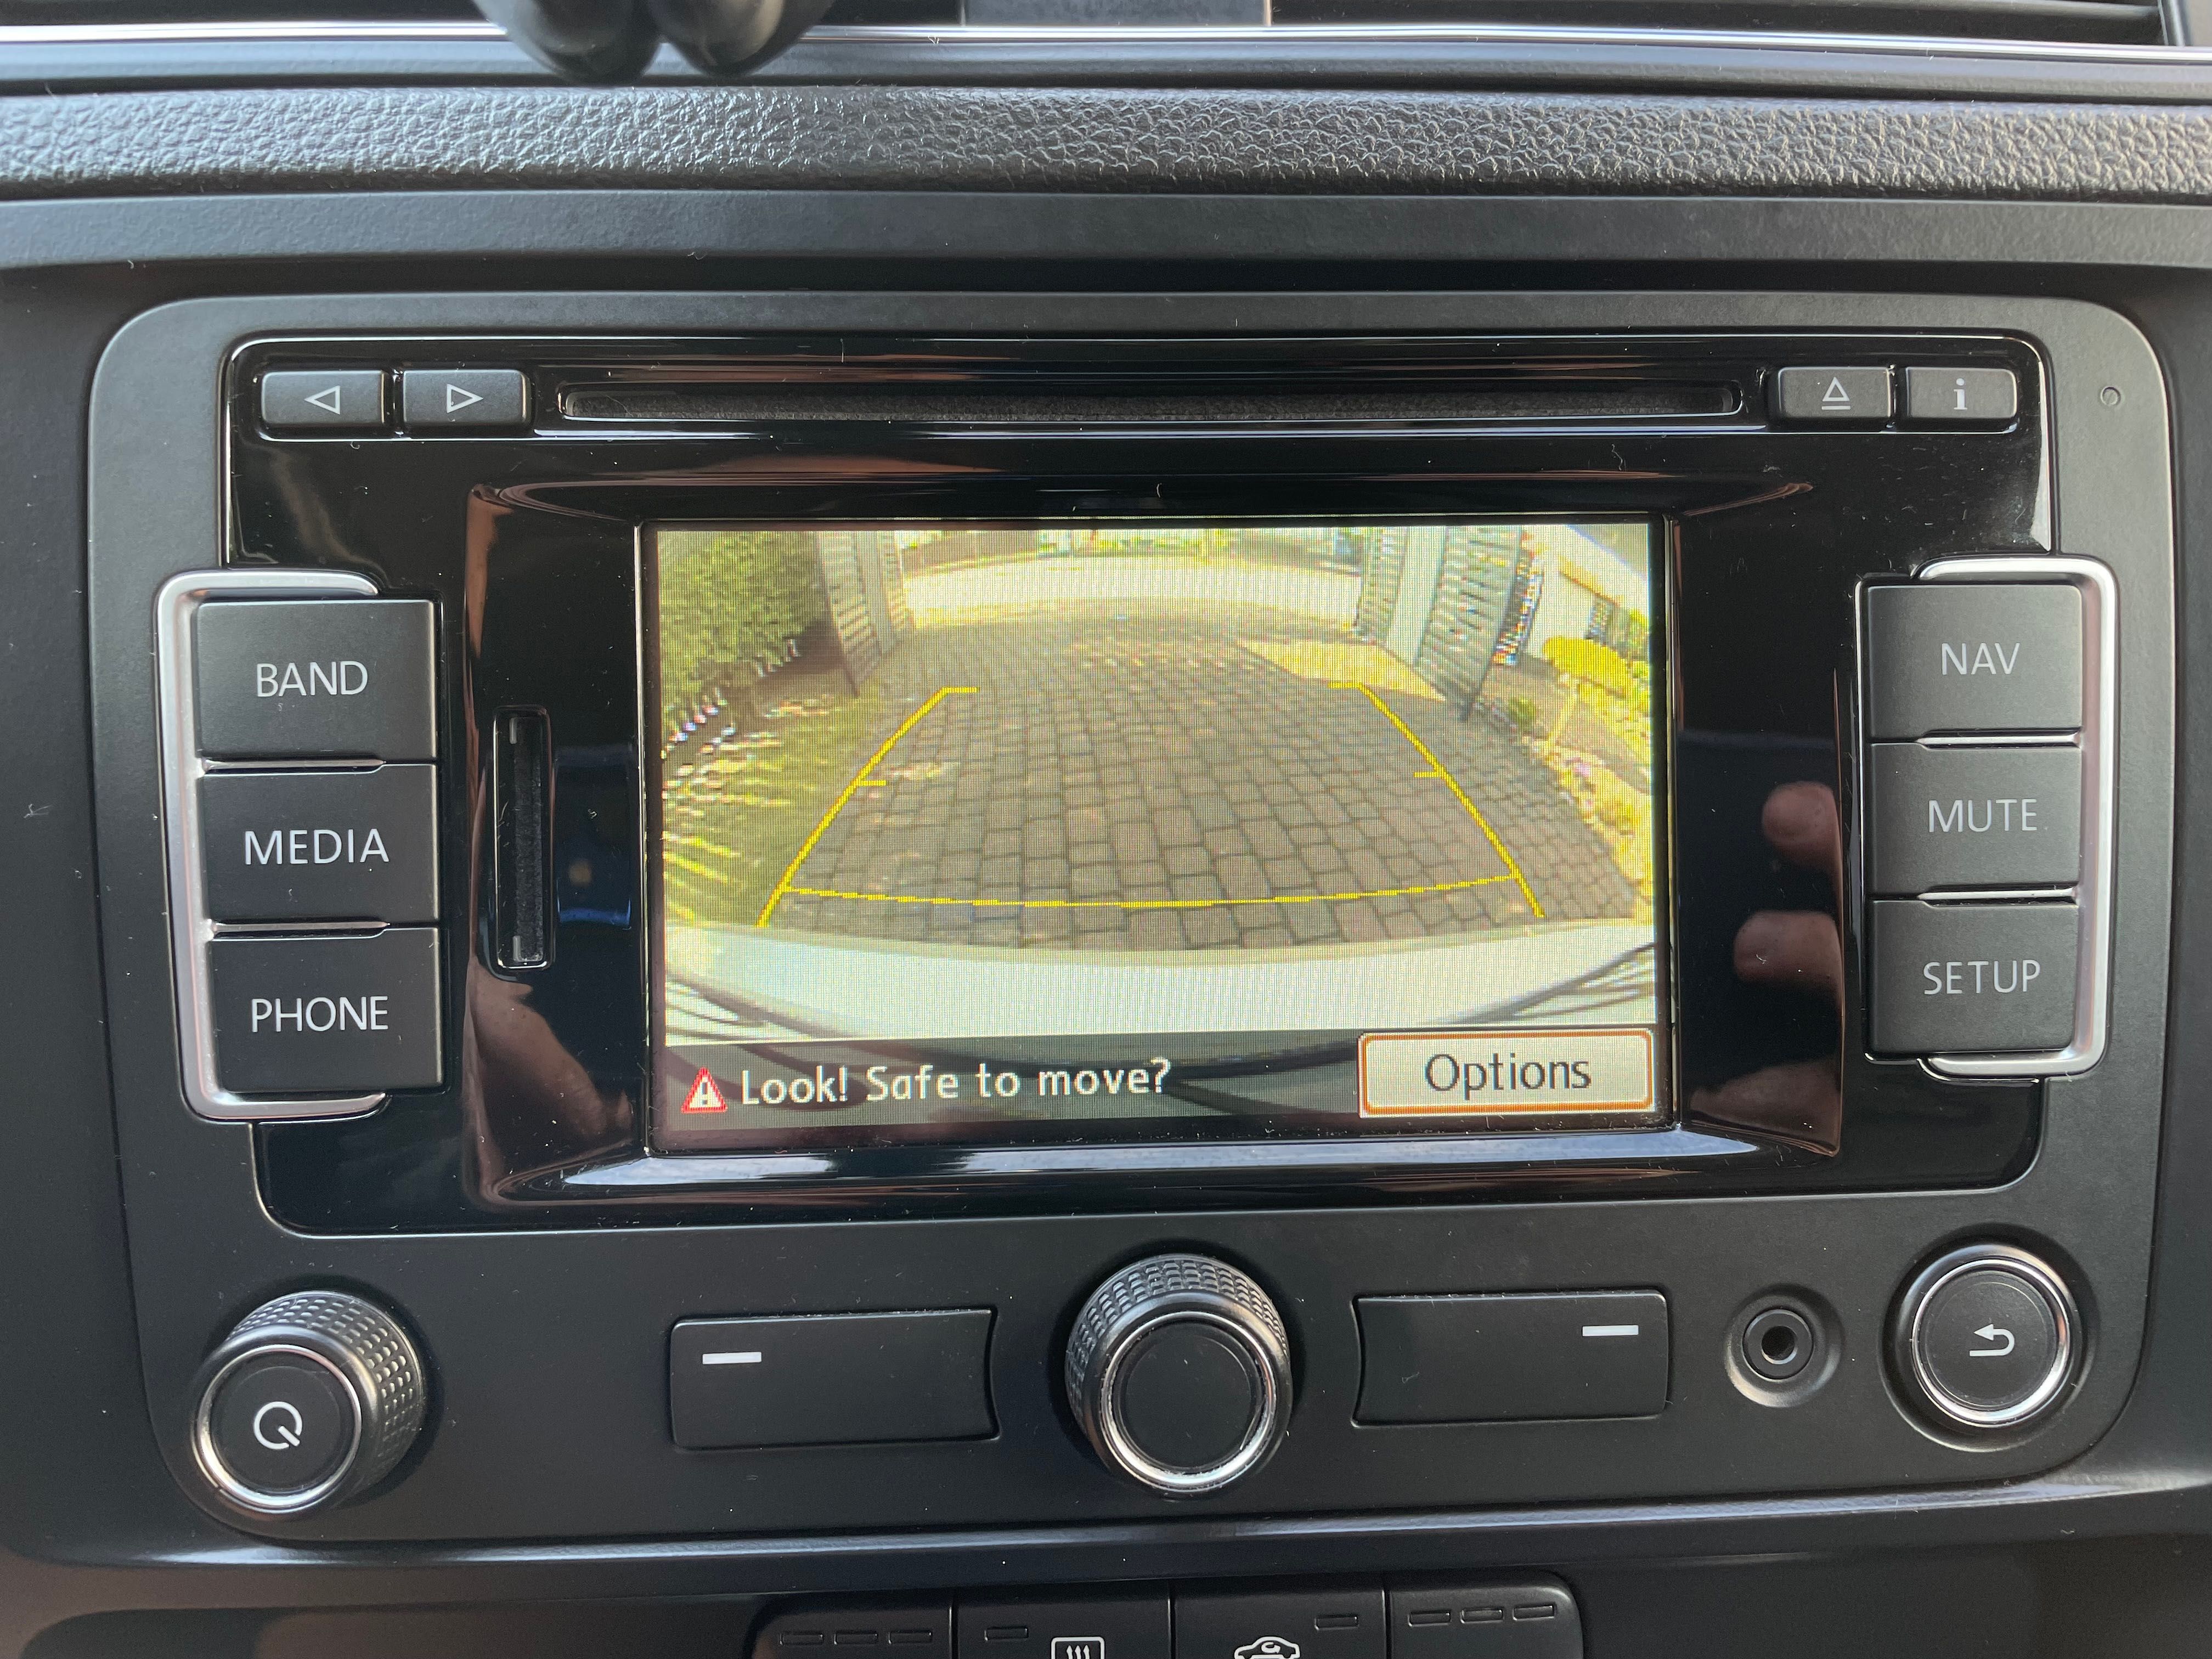 Radio nawigacja z Bluetooth RNS 315 Volkswagen, Skoda, Seat